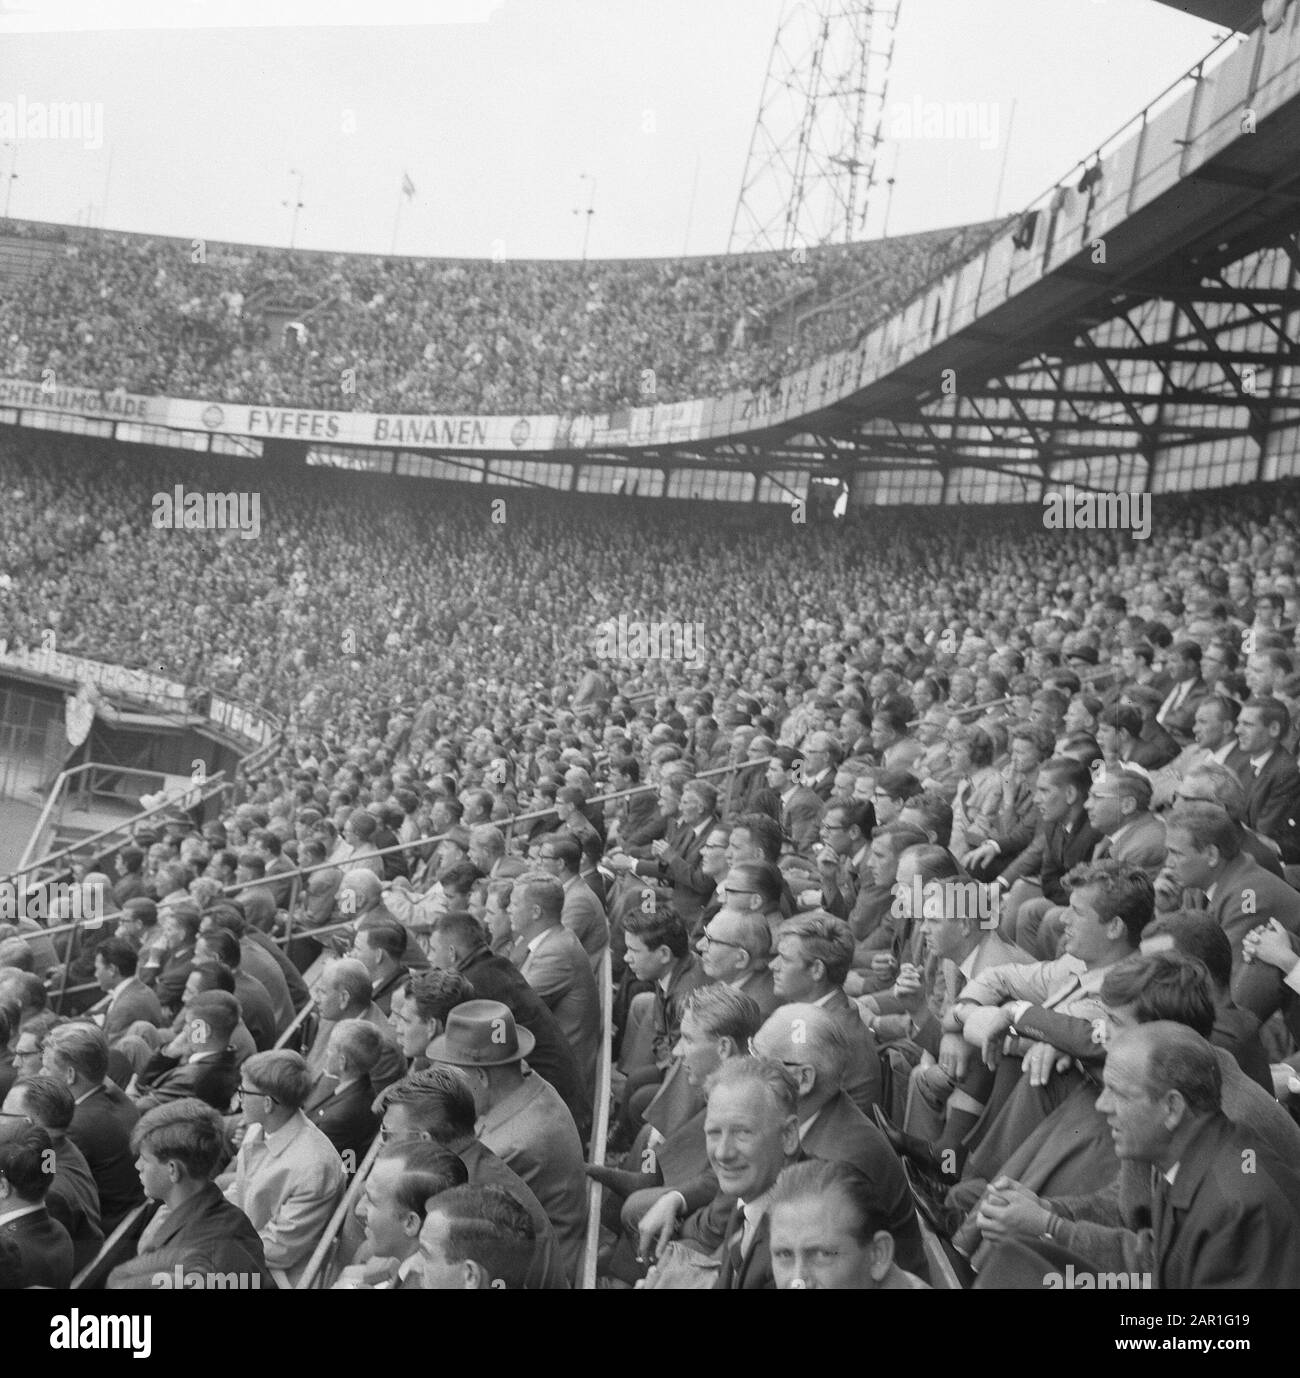 Feyenoord against PSV, huge mass of audience in stadium Date: August 22, 1965 Keywords: audience, sports, stadiums, football Institution name: Feyenoord Stock Photo